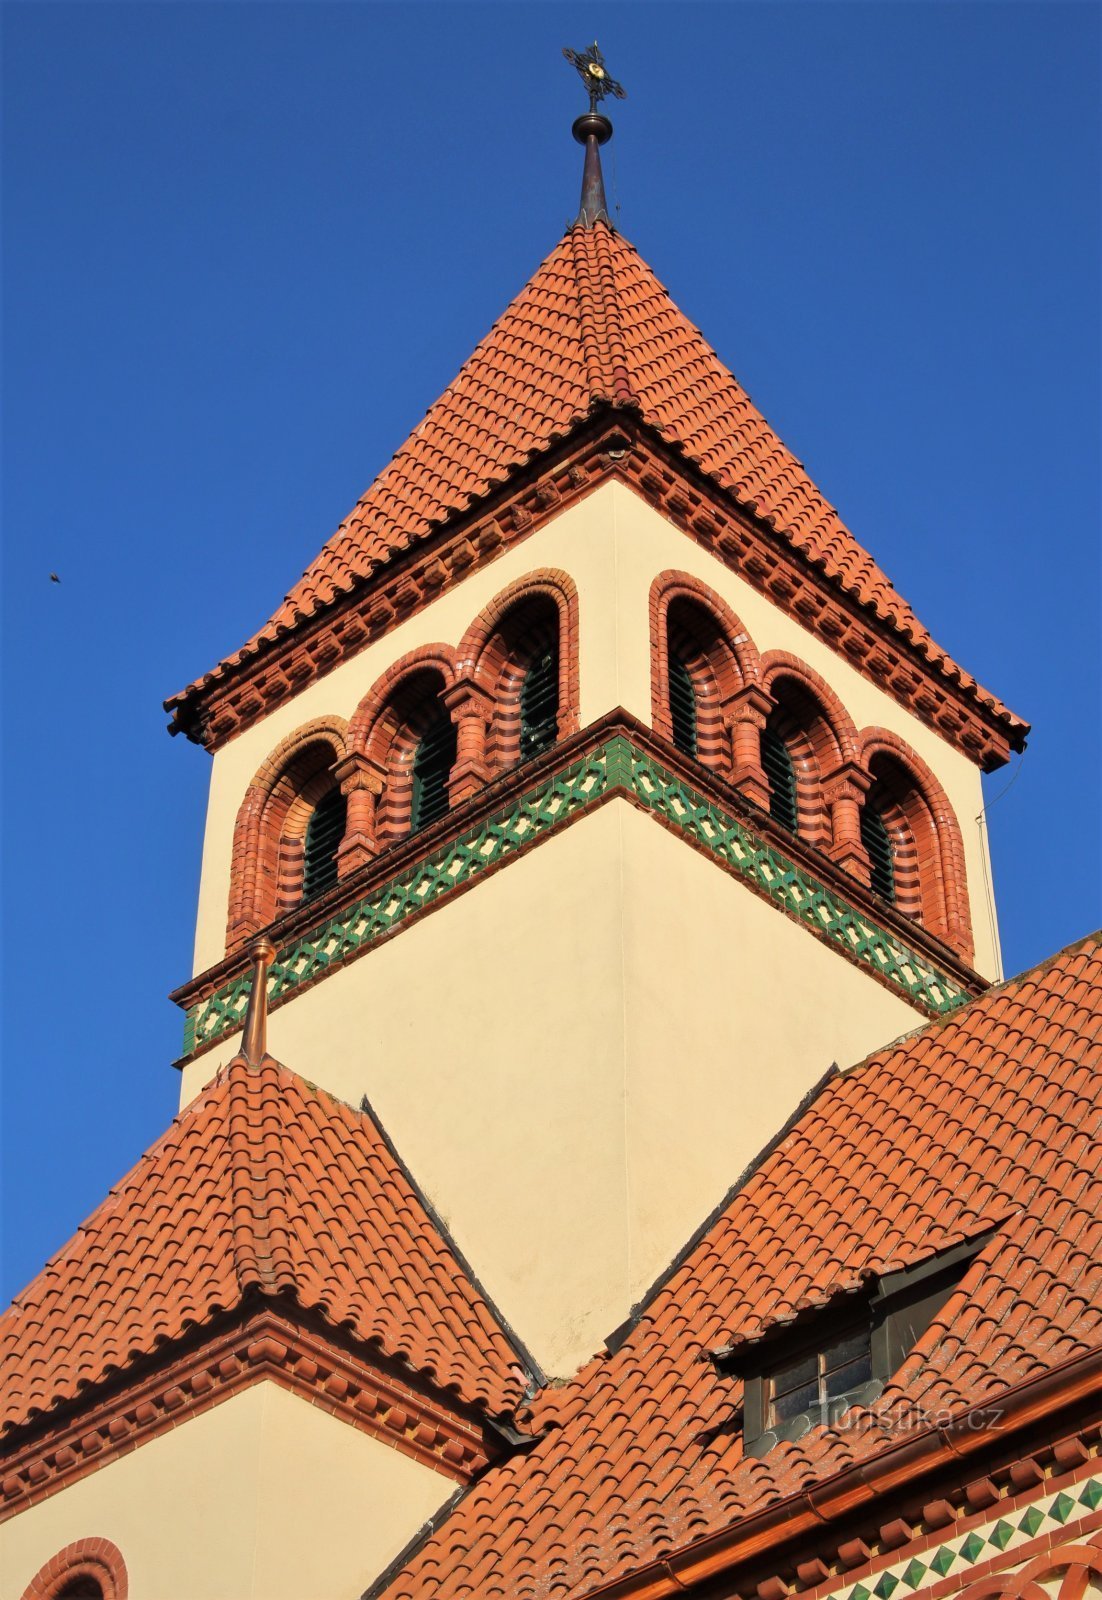 Detalje af kirketårnet